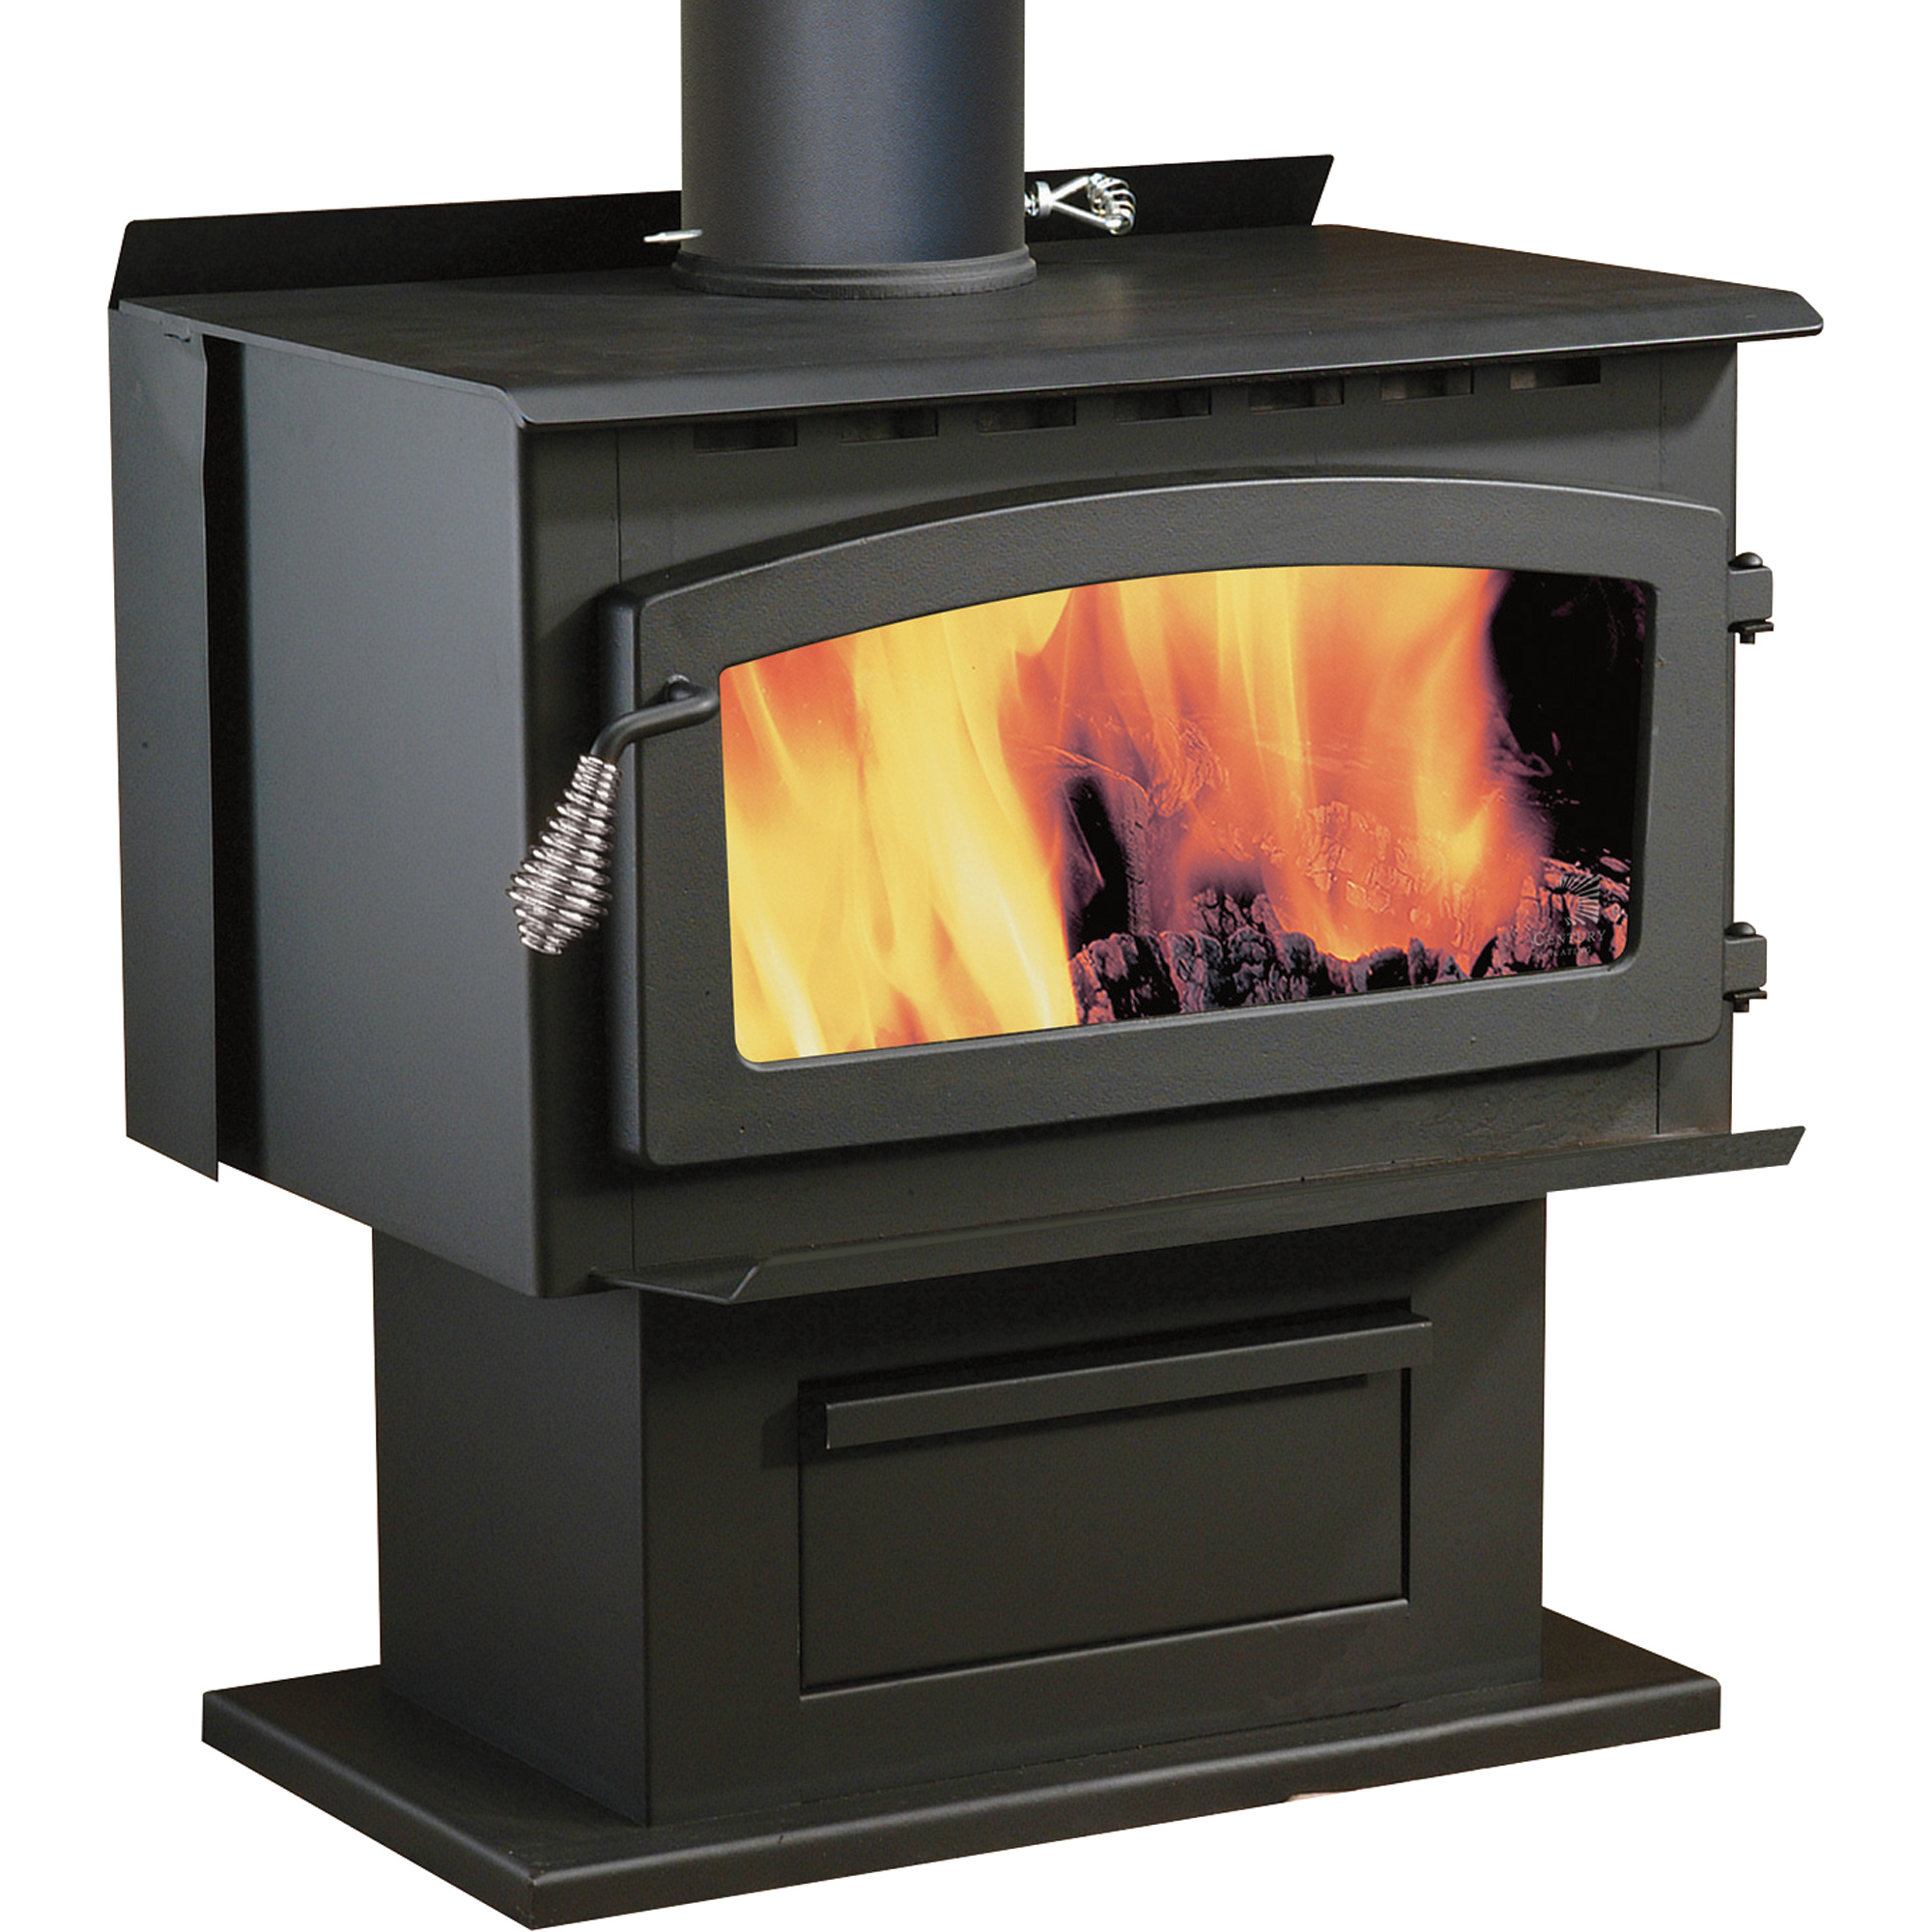 Product  Century Heating Whistler Wood Burning Stove   110000 Btu    